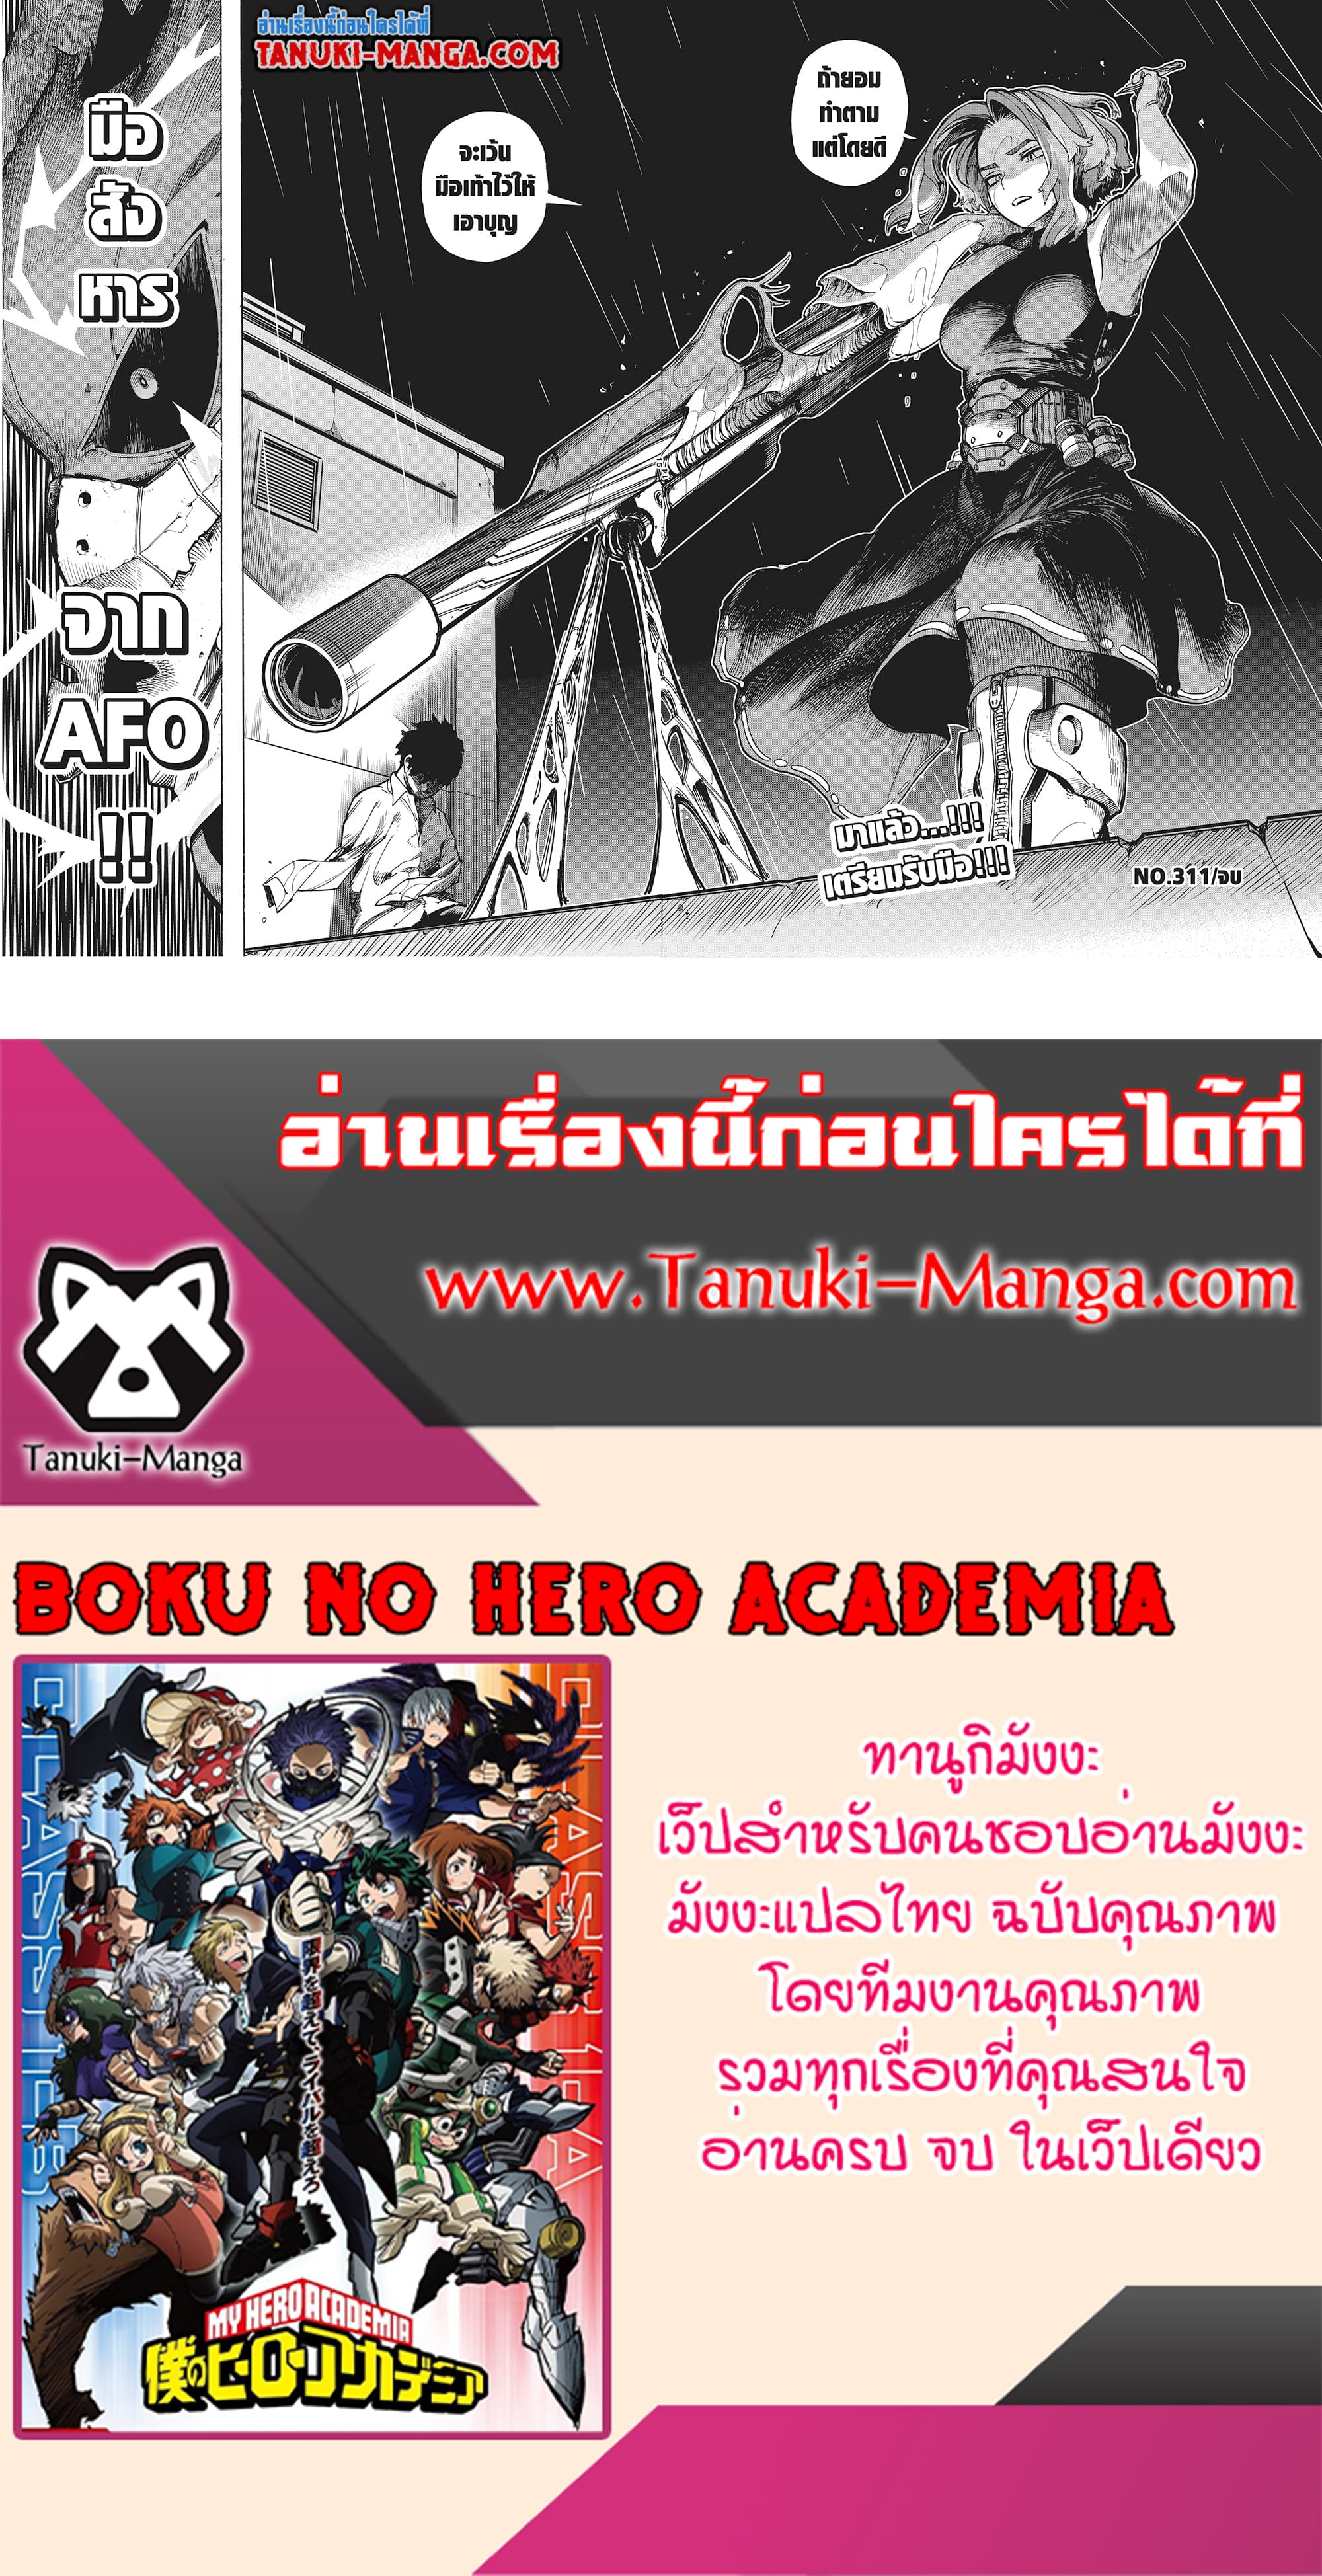 Boku no Hero Academia (My Hero Academia) 311 (1)